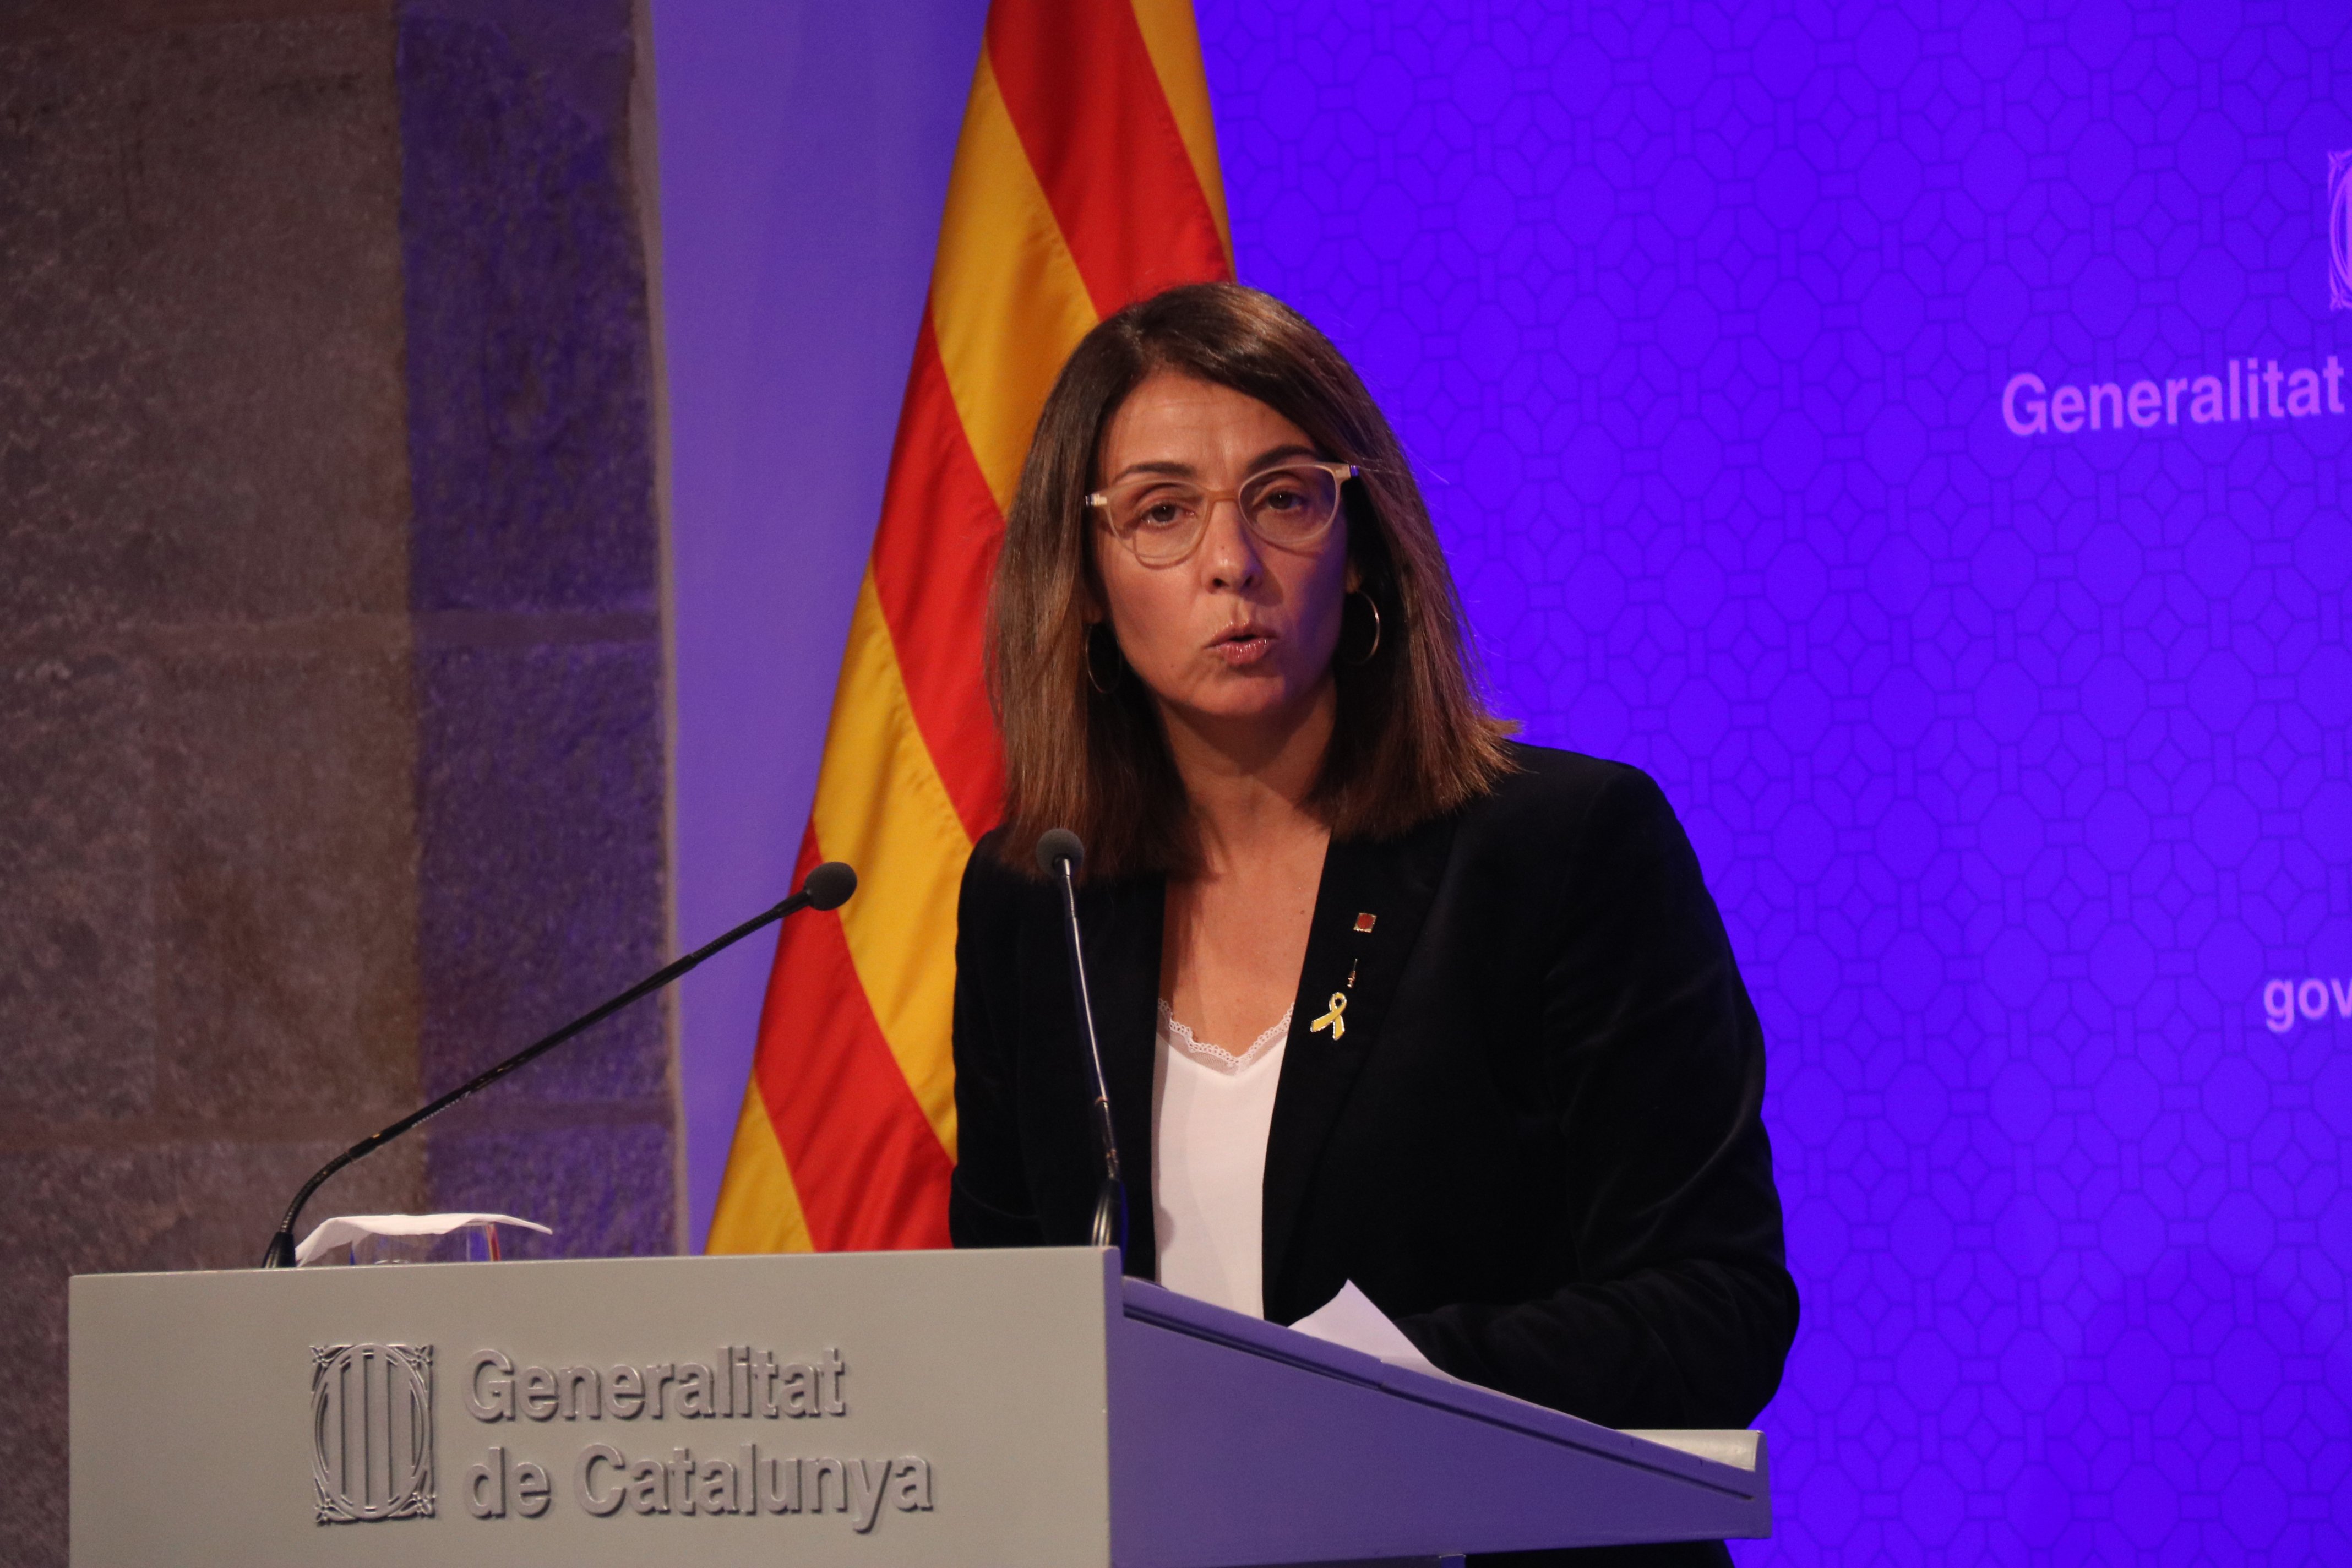 El 36% de los españoles defienden el referéndum, frente al 70% de los catalanes